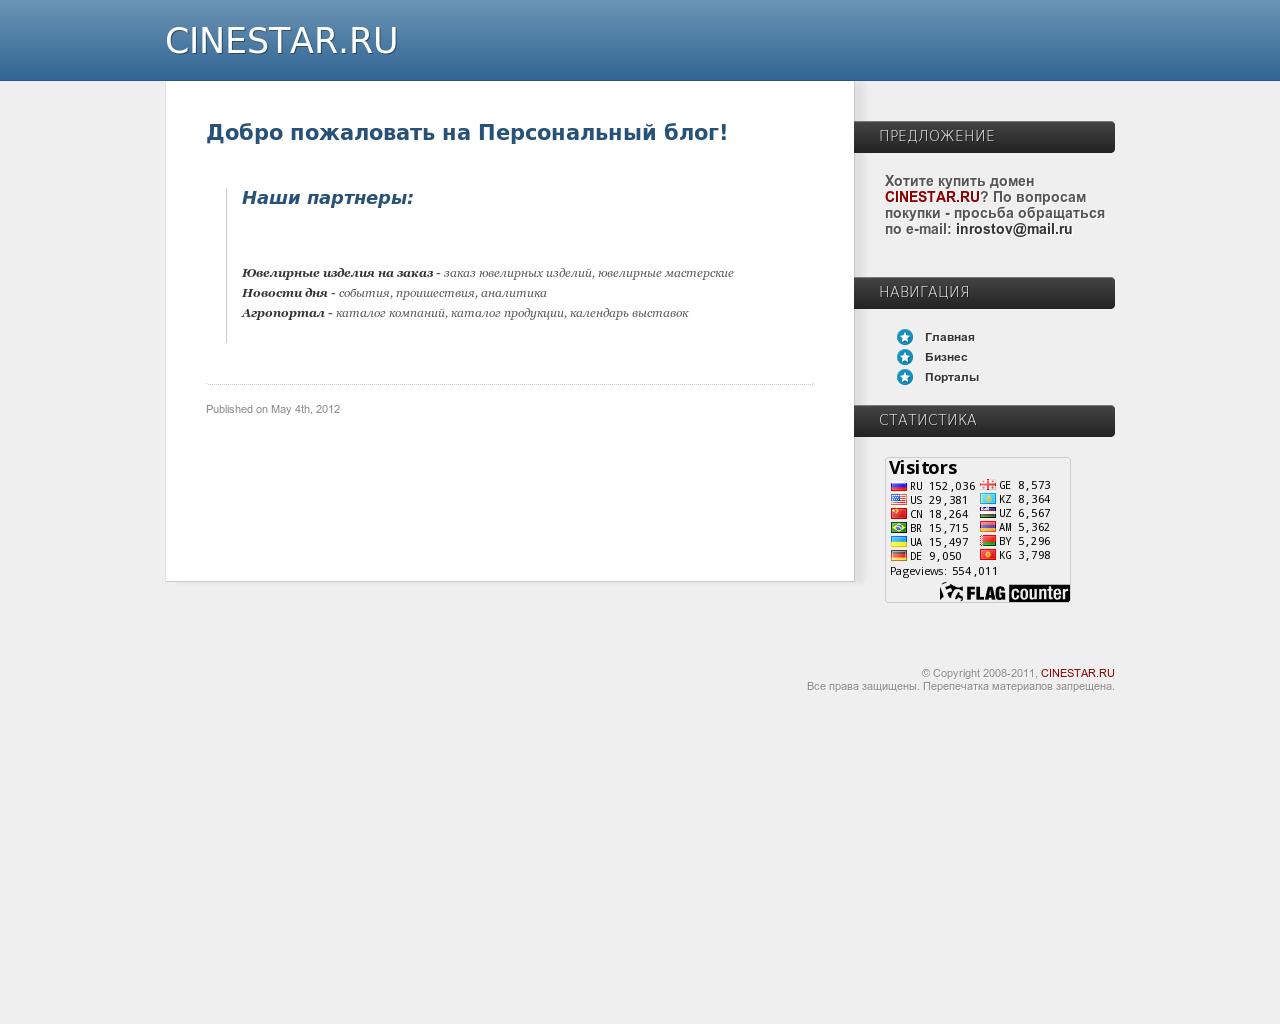 Изображение сайта cinestar.ru в разрешении 1280x1024